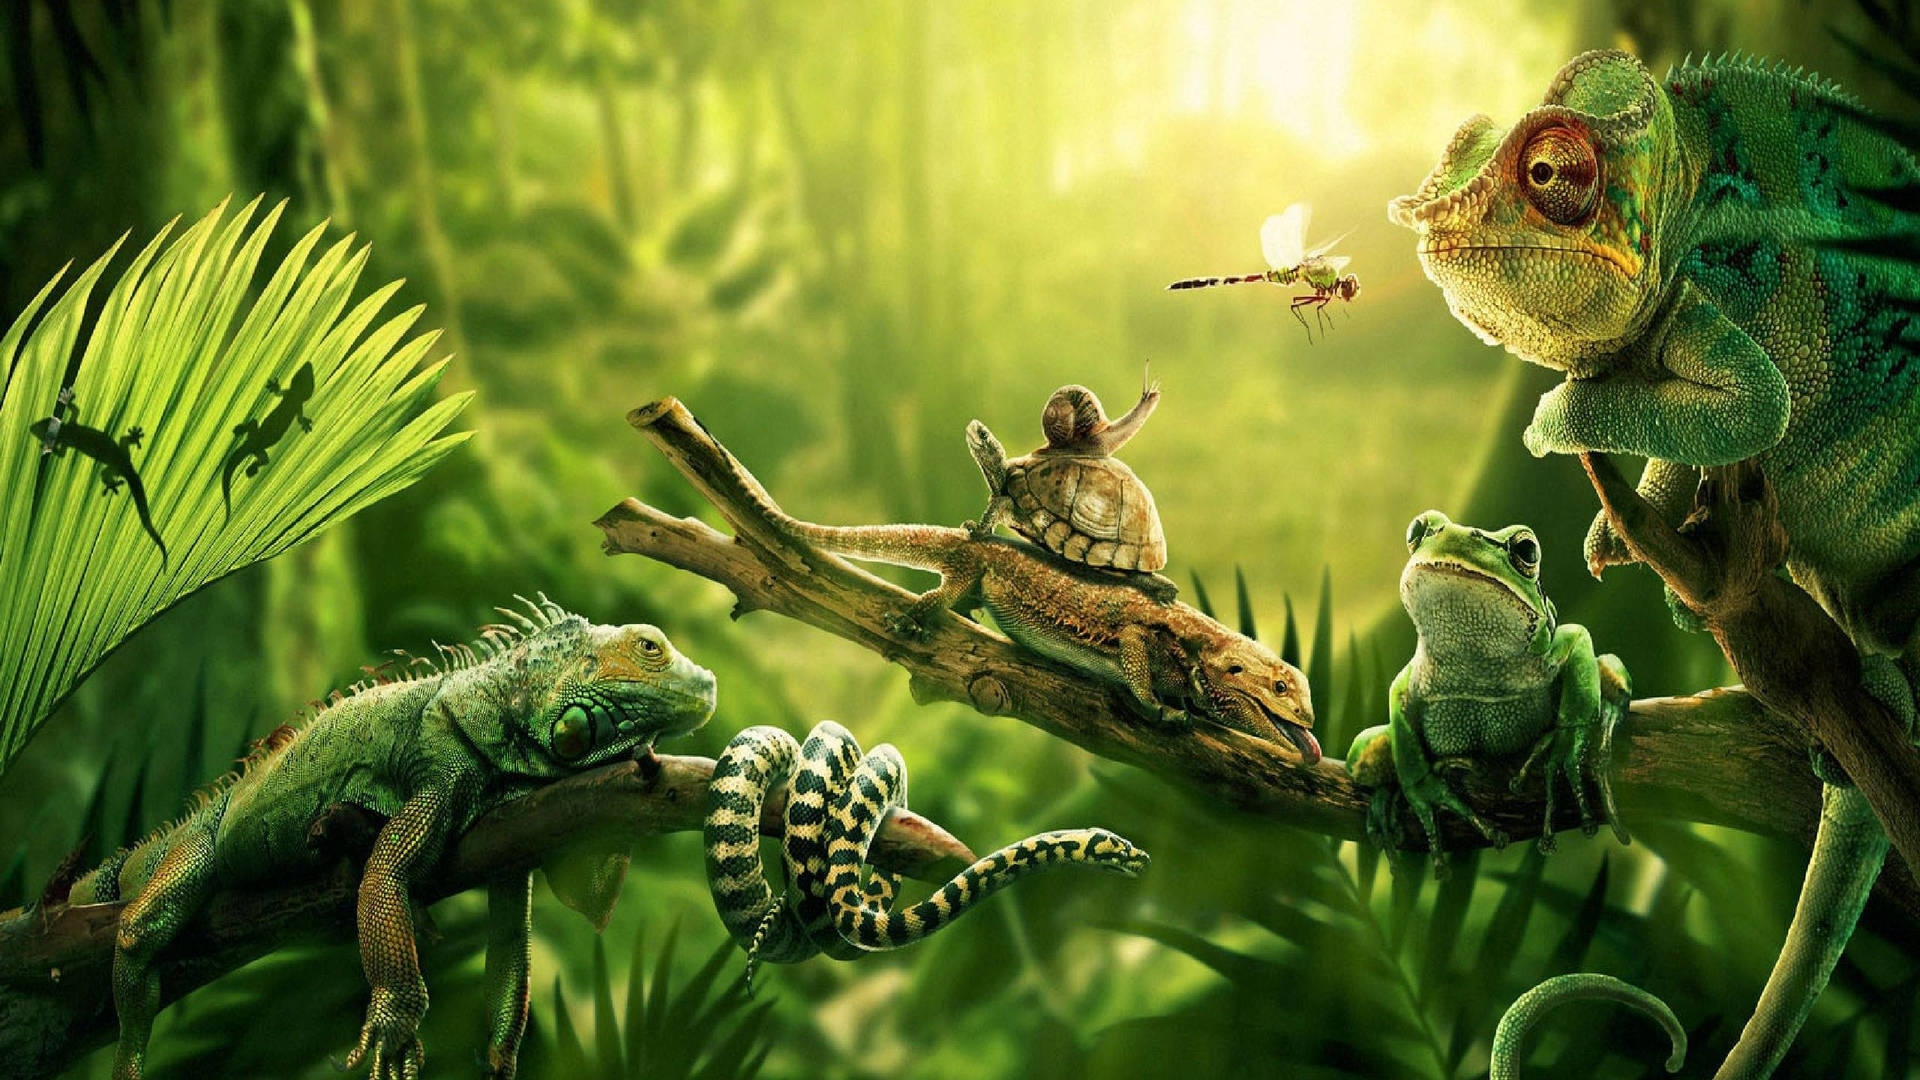 Reptiles Of The Jungle